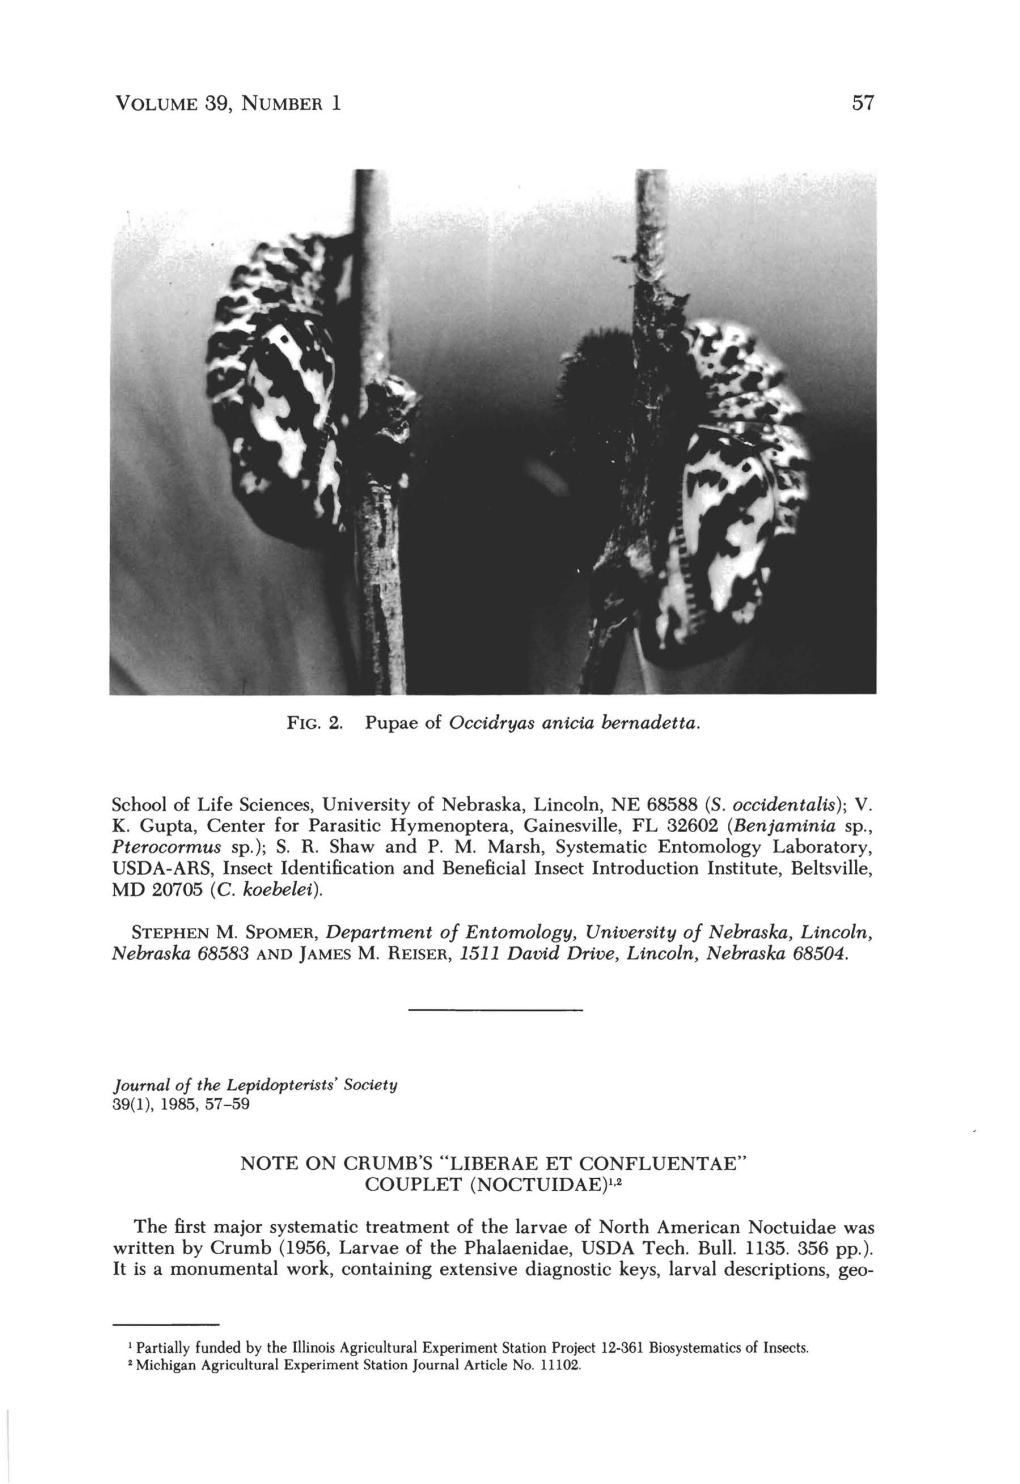 Note on Crumb's "Liberae Et Confluentae" Couplet (Noctuidae)1.2